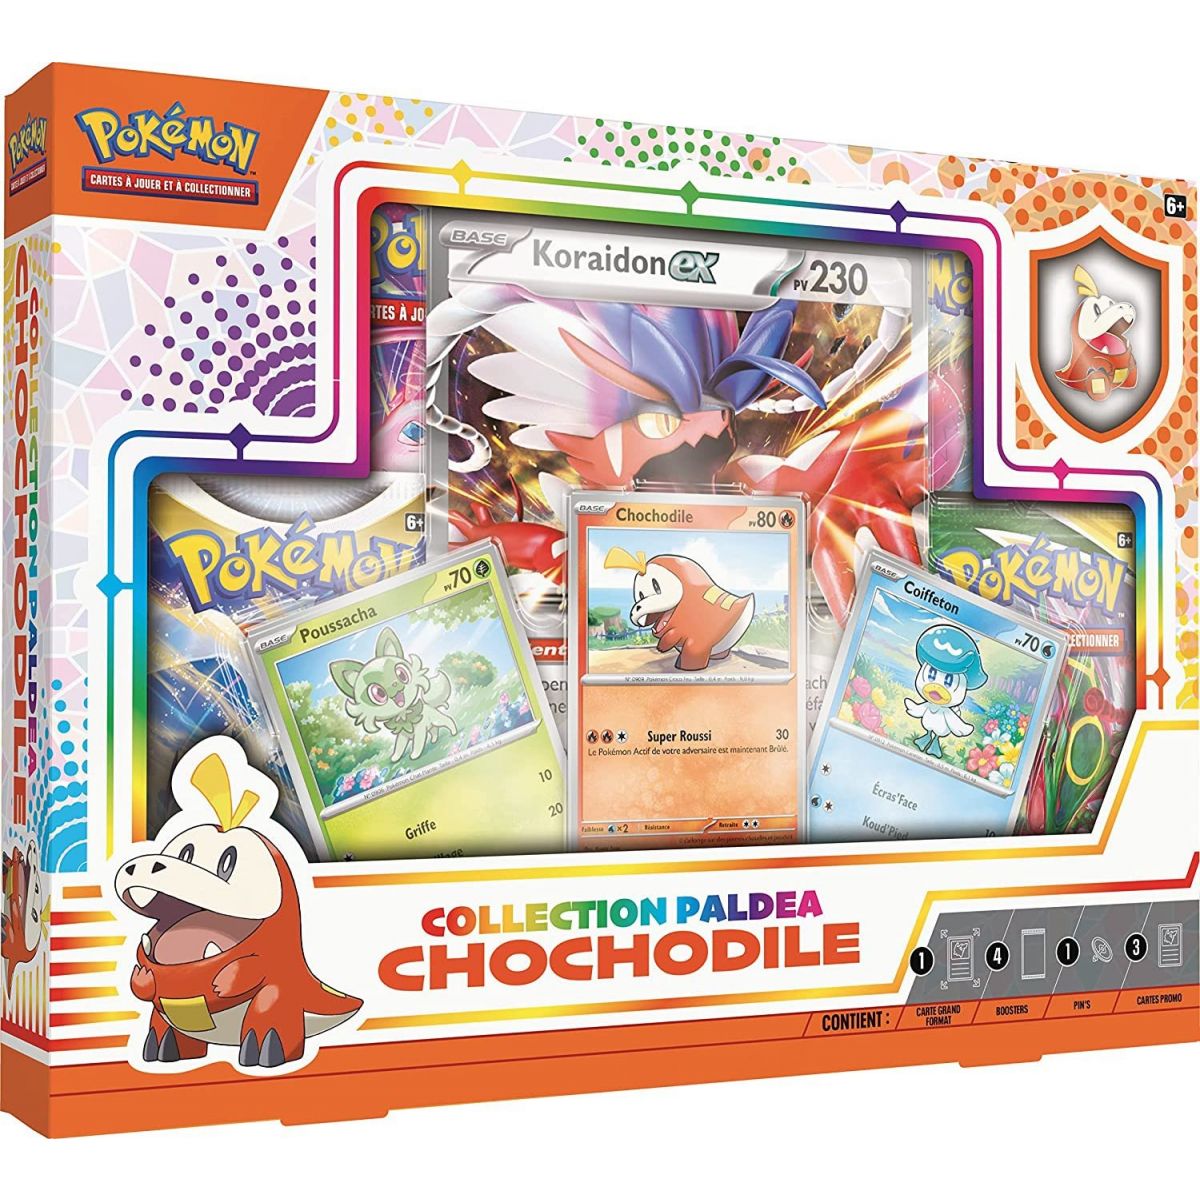 Pokémon - Paldea Collection Box - Chochodile - January 2023 - FR